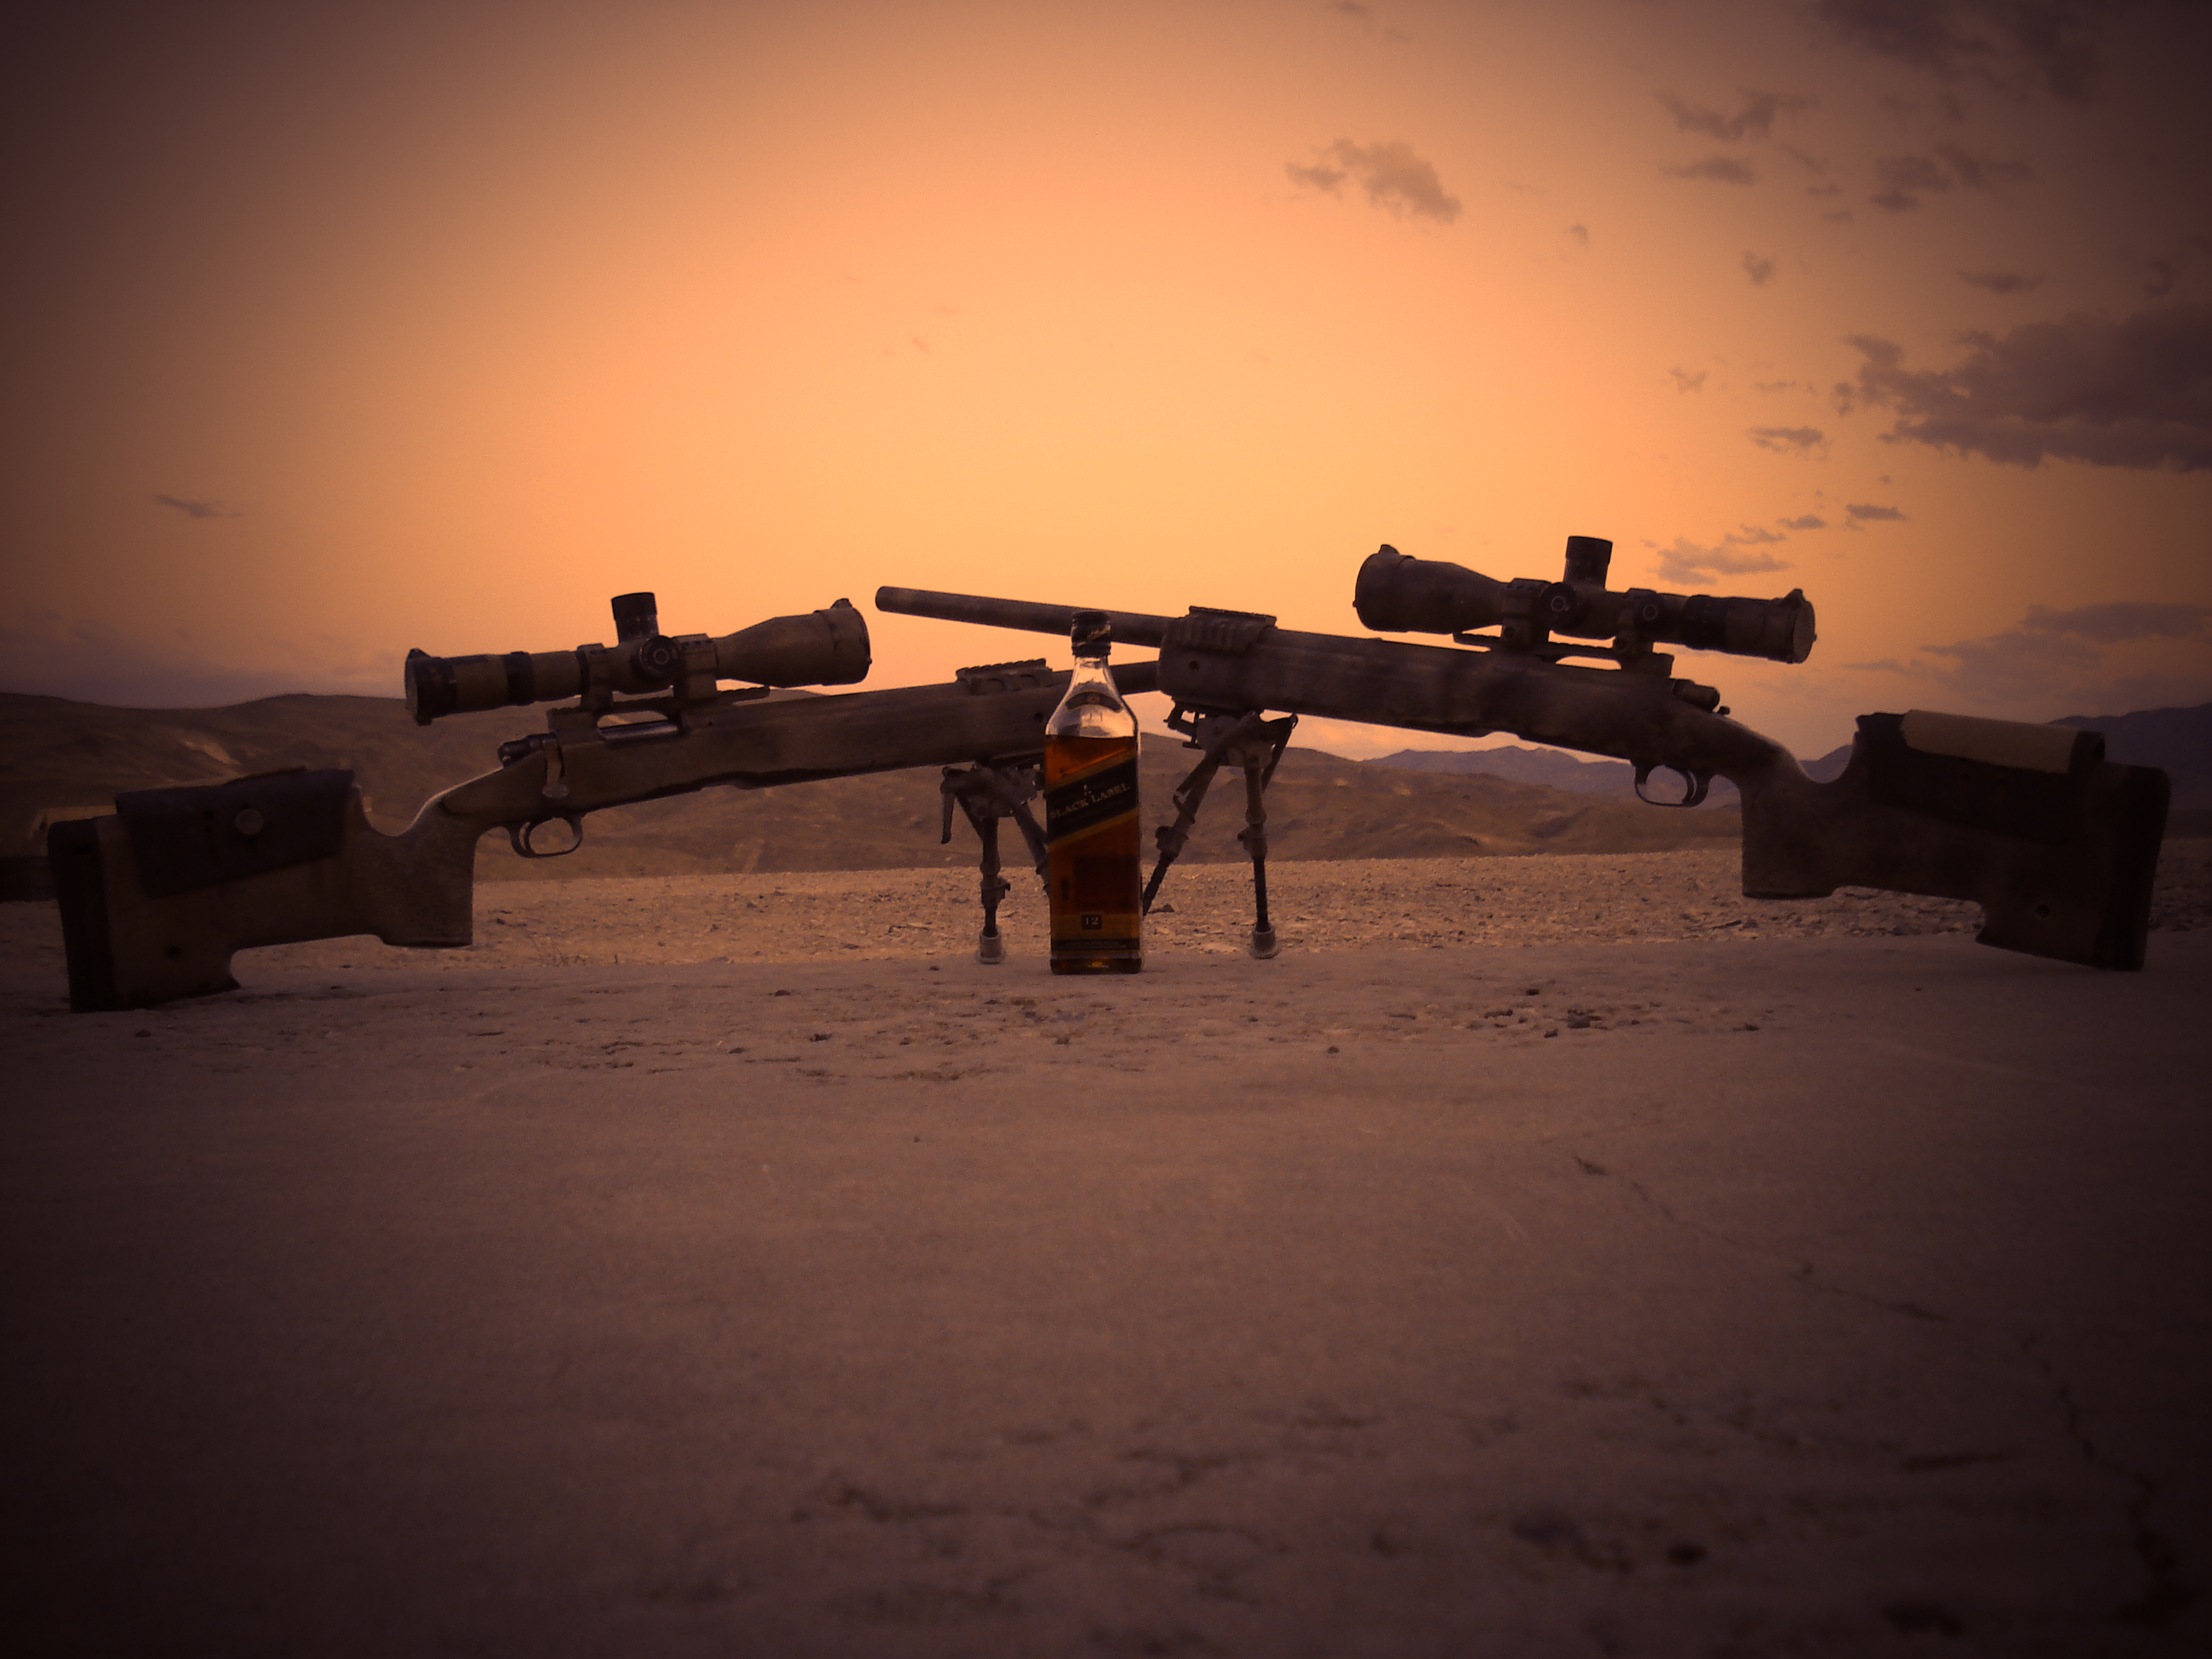 sniper rifle rifles HD Wallpaper   General 533227 2816x2112